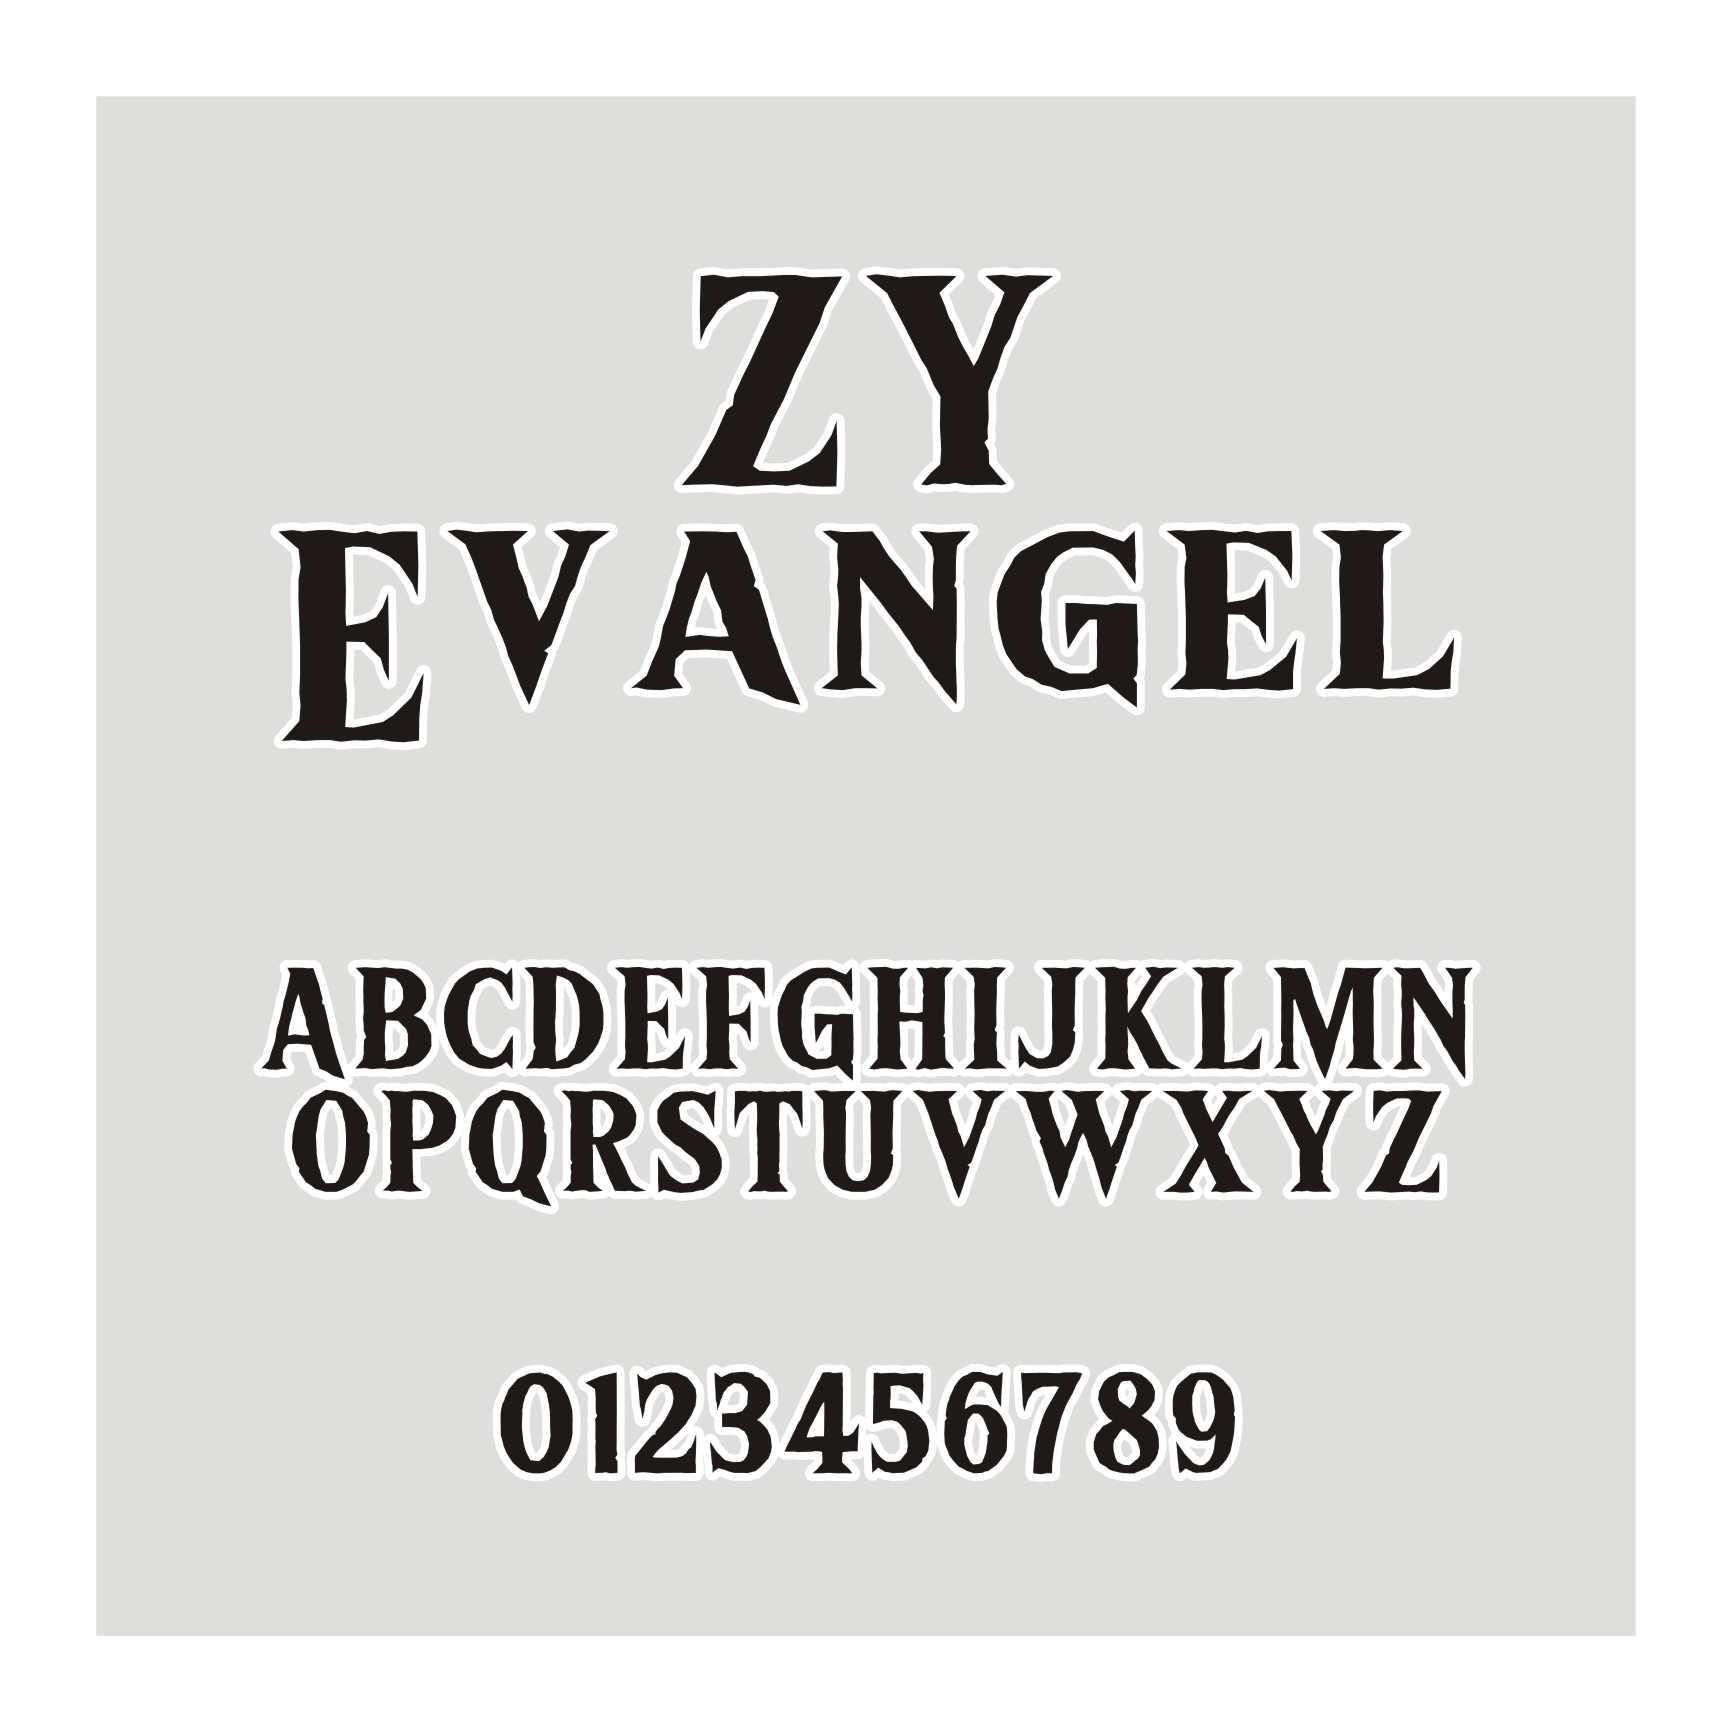 ZY Evangel